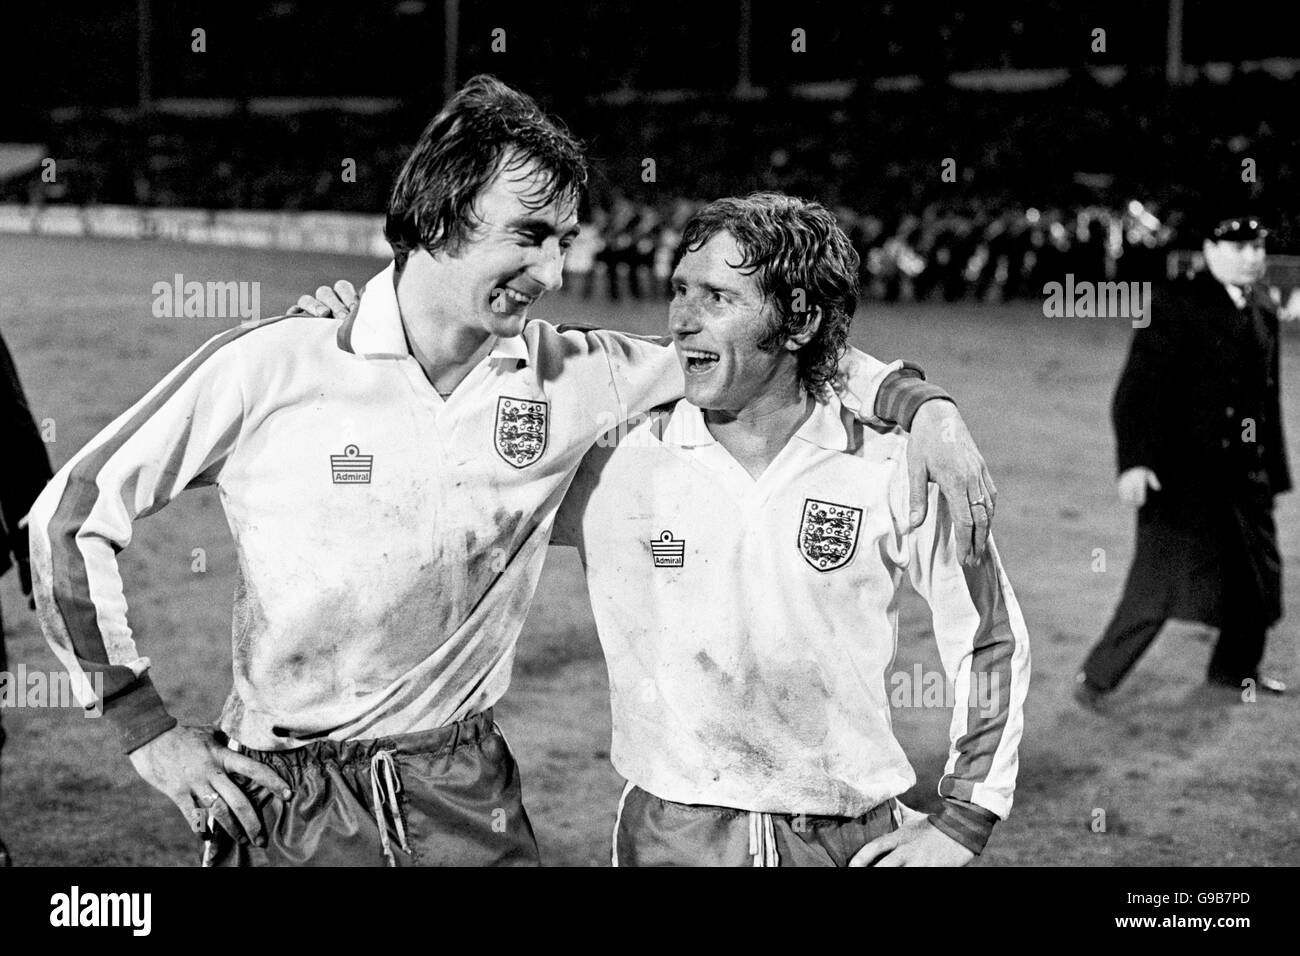 Fútbol - Amistoso - Inglaterra contra Alemania Occidental - Estadio Wembley. Alan Hudson (l) de Inglaterra celebra con el nuevo capitán Alan Ball (r) después de su victoria en 2-0. Foto de stock